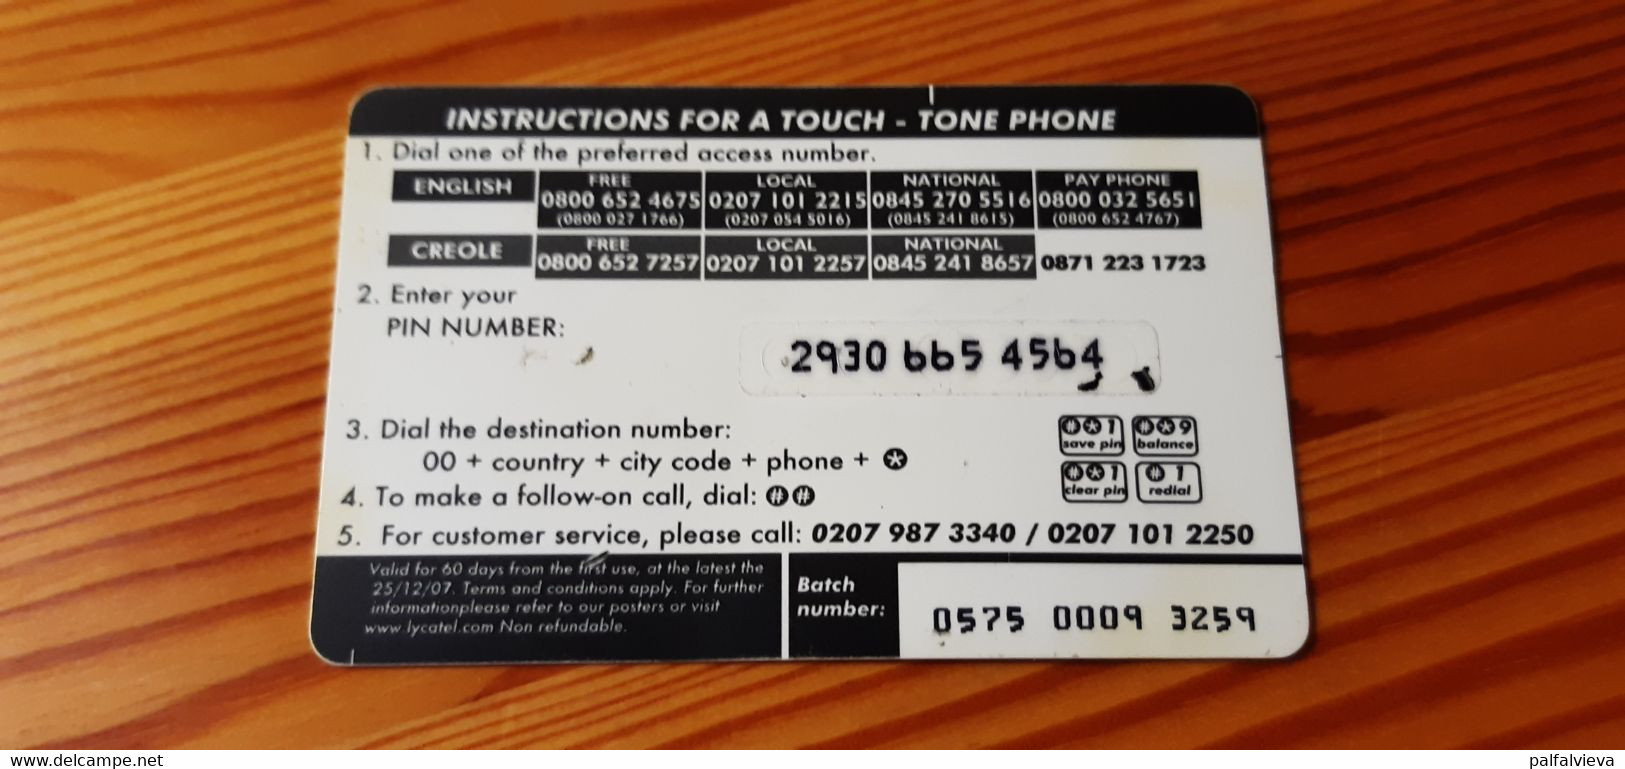 Lycatel Prepaid Phonecard Mauritius - Mauritius